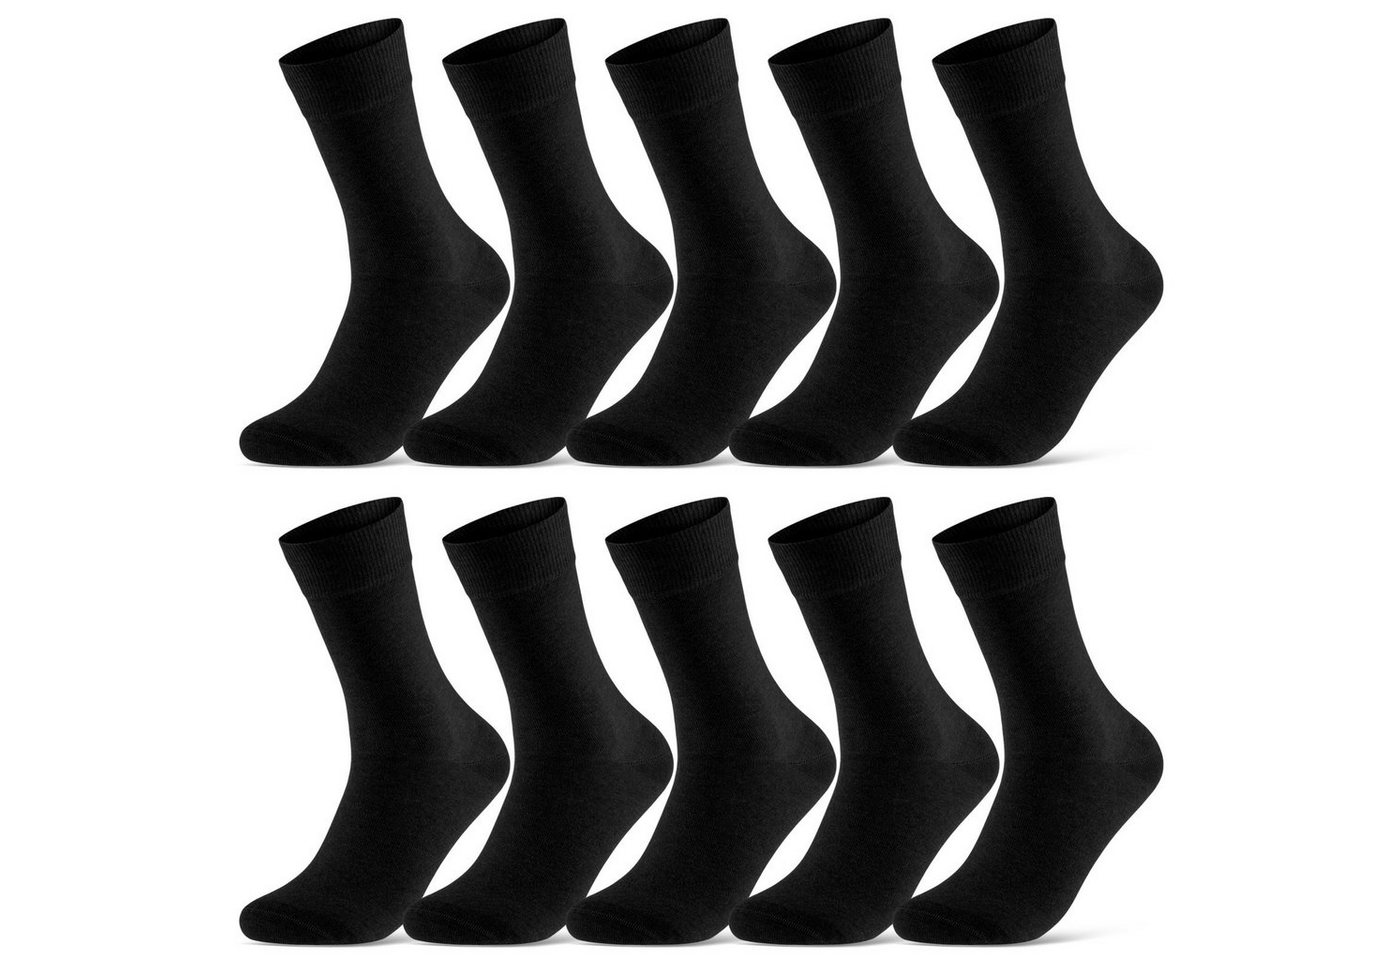 sockenkauf24 Socken 10 Paar Damen & Herren Socken Business Socken Baumwolle (Schwarz, 35-38) mit Komfortbund (Basicline) - 70201T von sockenkauf24